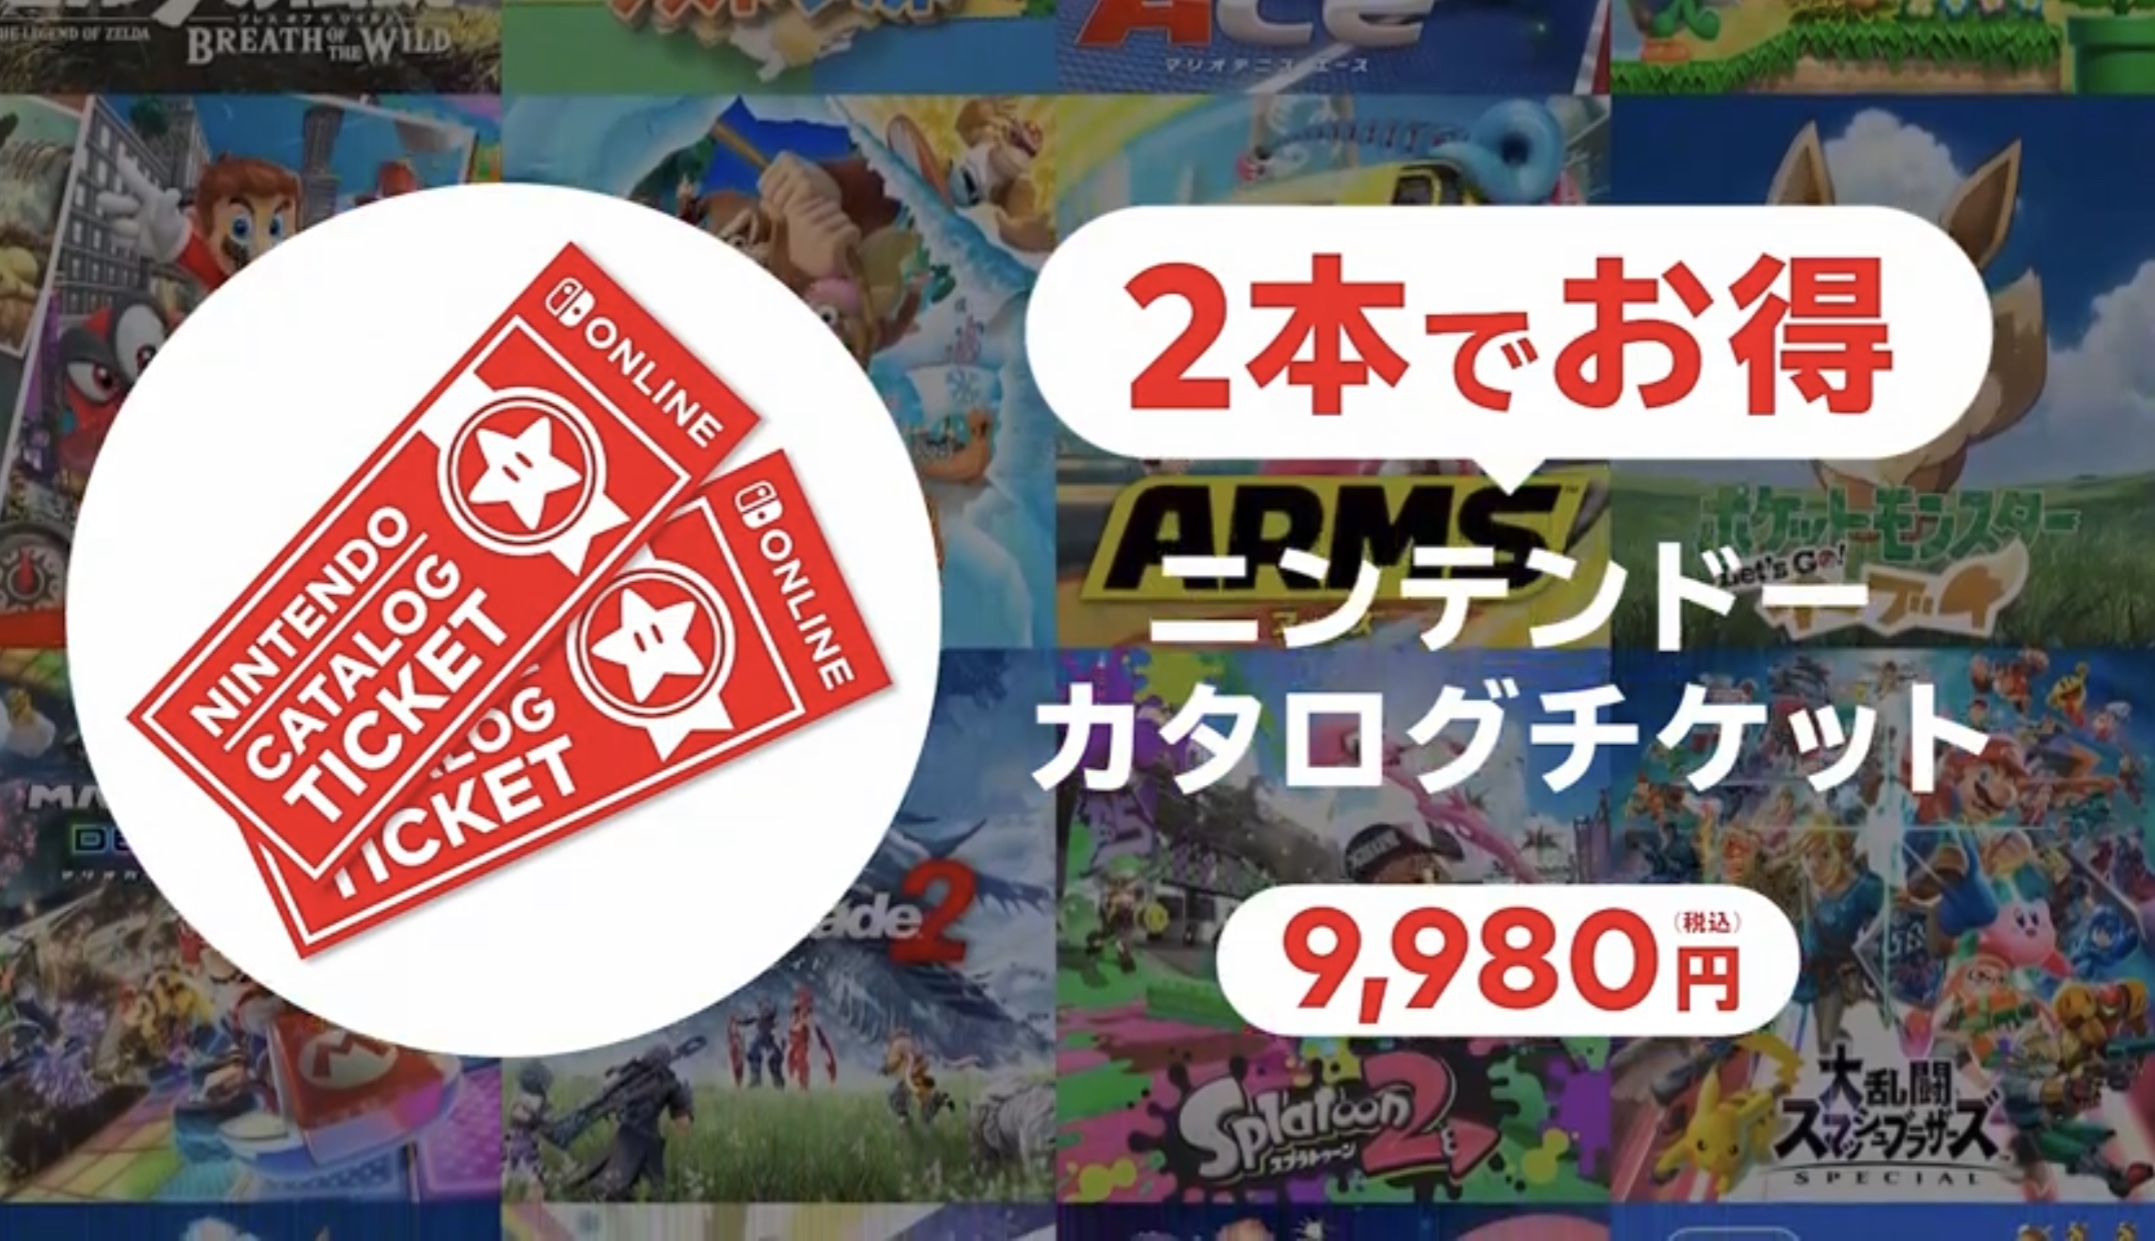 任天堂ソフト2本で9980円のニンテンドーカタログチケット発売。新作も